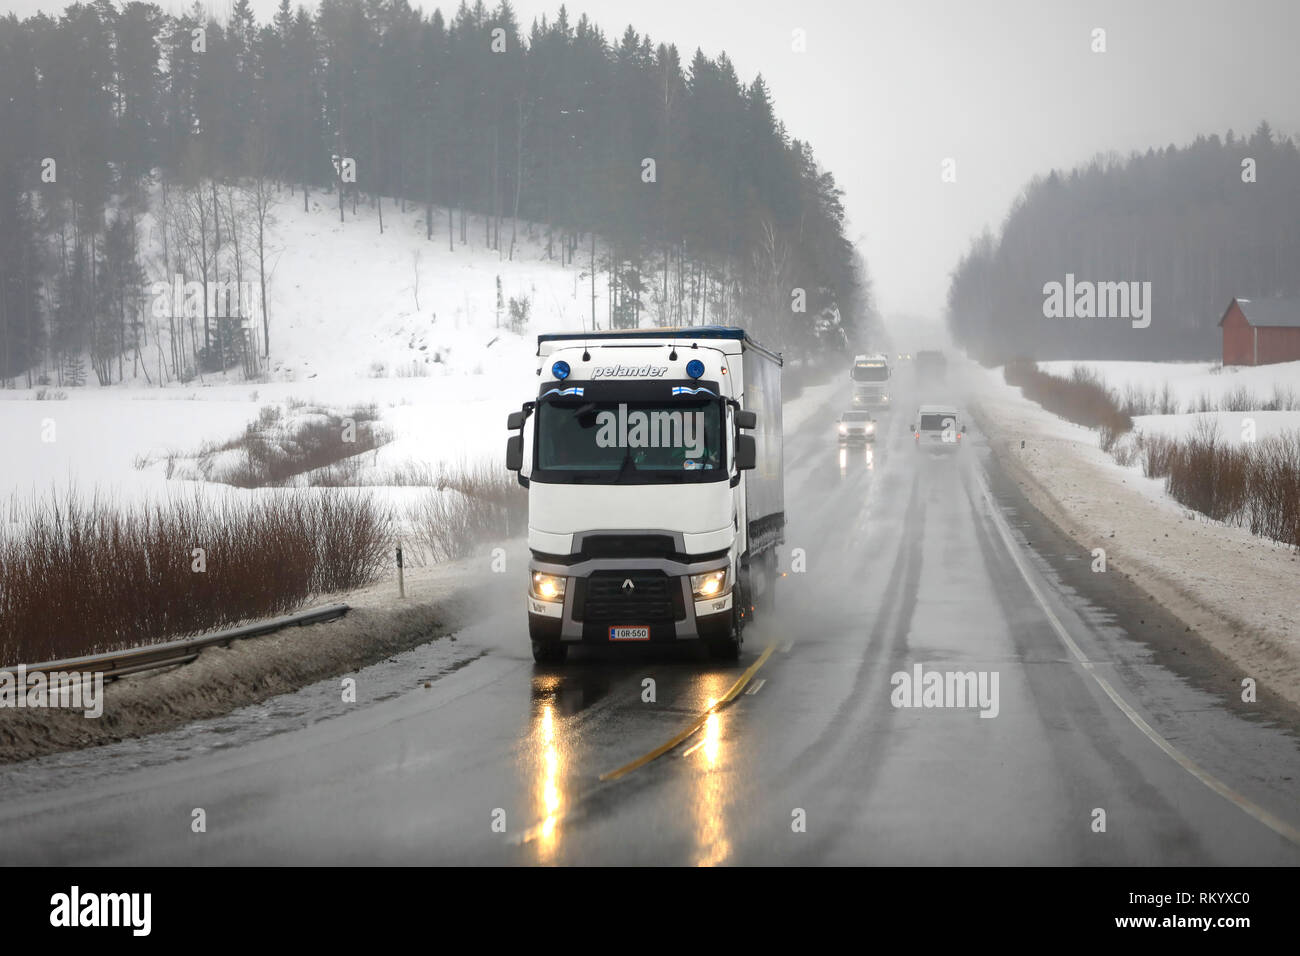 Salo, Finlande - le 8 février 2019 : Blanc Renault Trucks T semi-remorque de Pelander transporte des marchandises en un jour pluvieux de l'hiver parmi la circulation routière. Banque D'Images